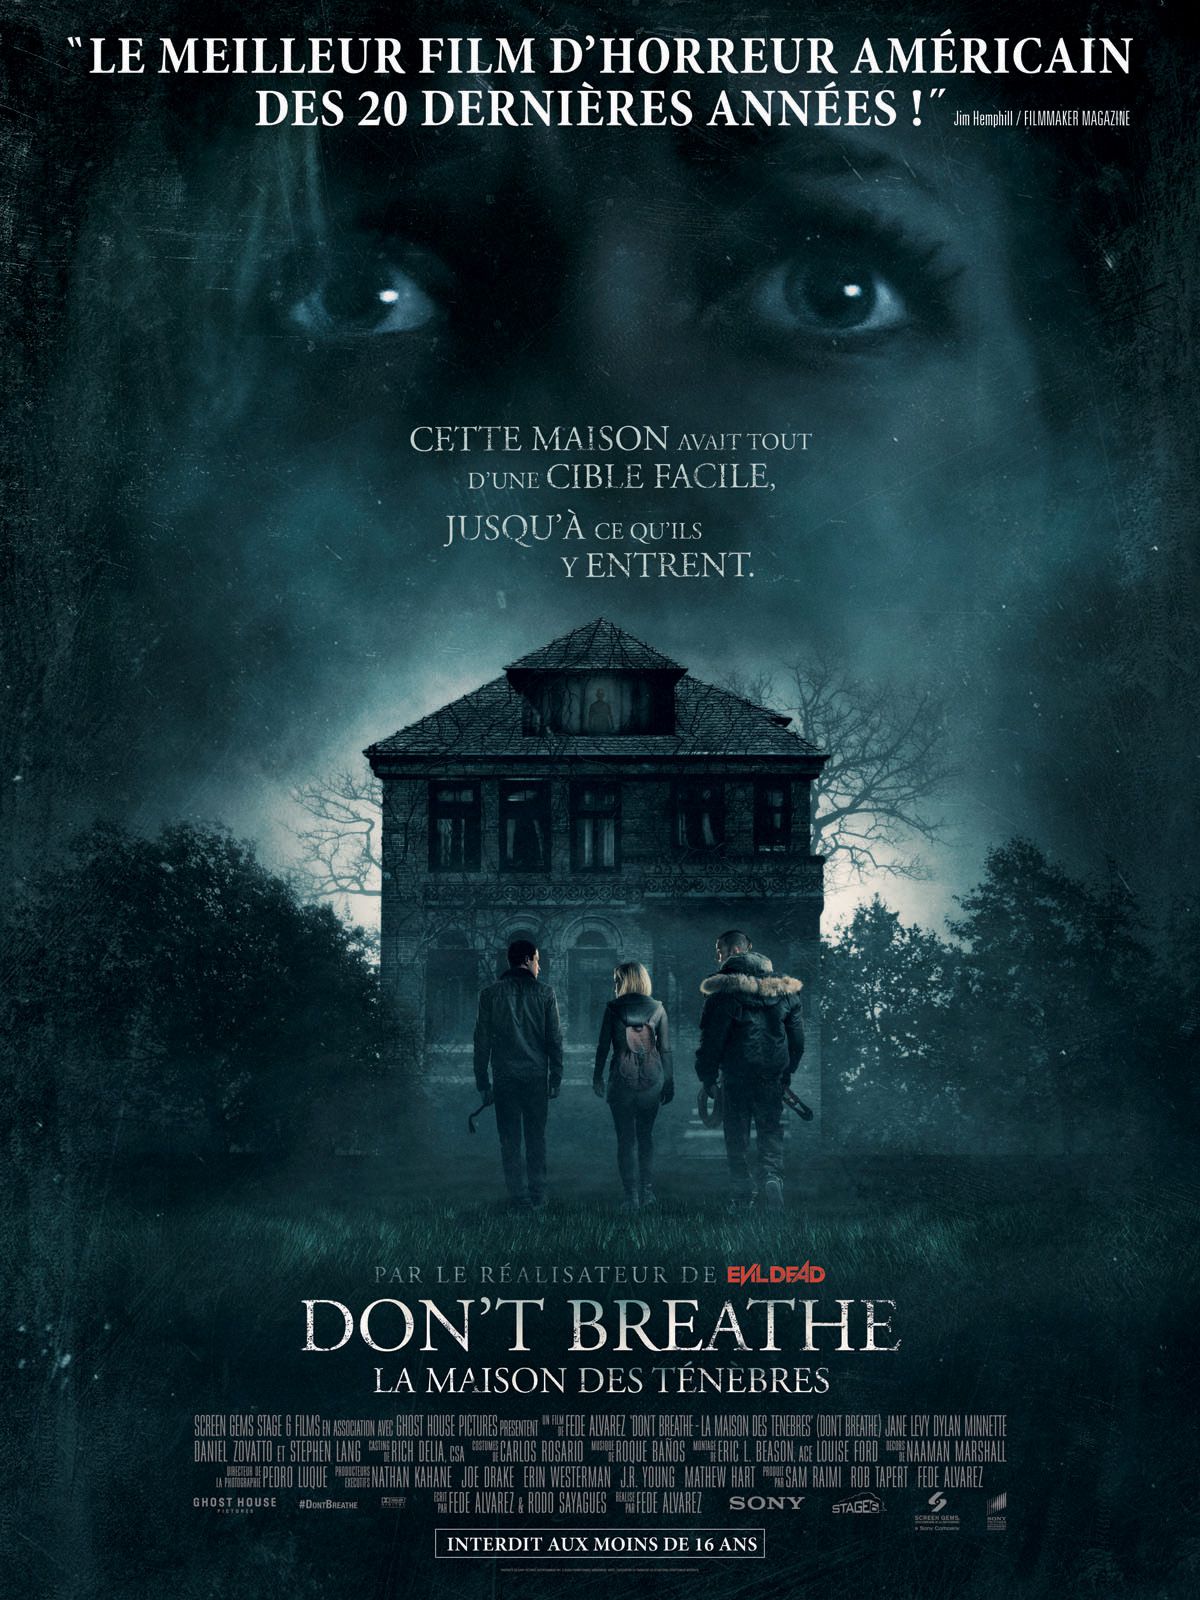 Don't Breathe - La Maison des ténèbres - Film (2016) streaming VF gratuit complet